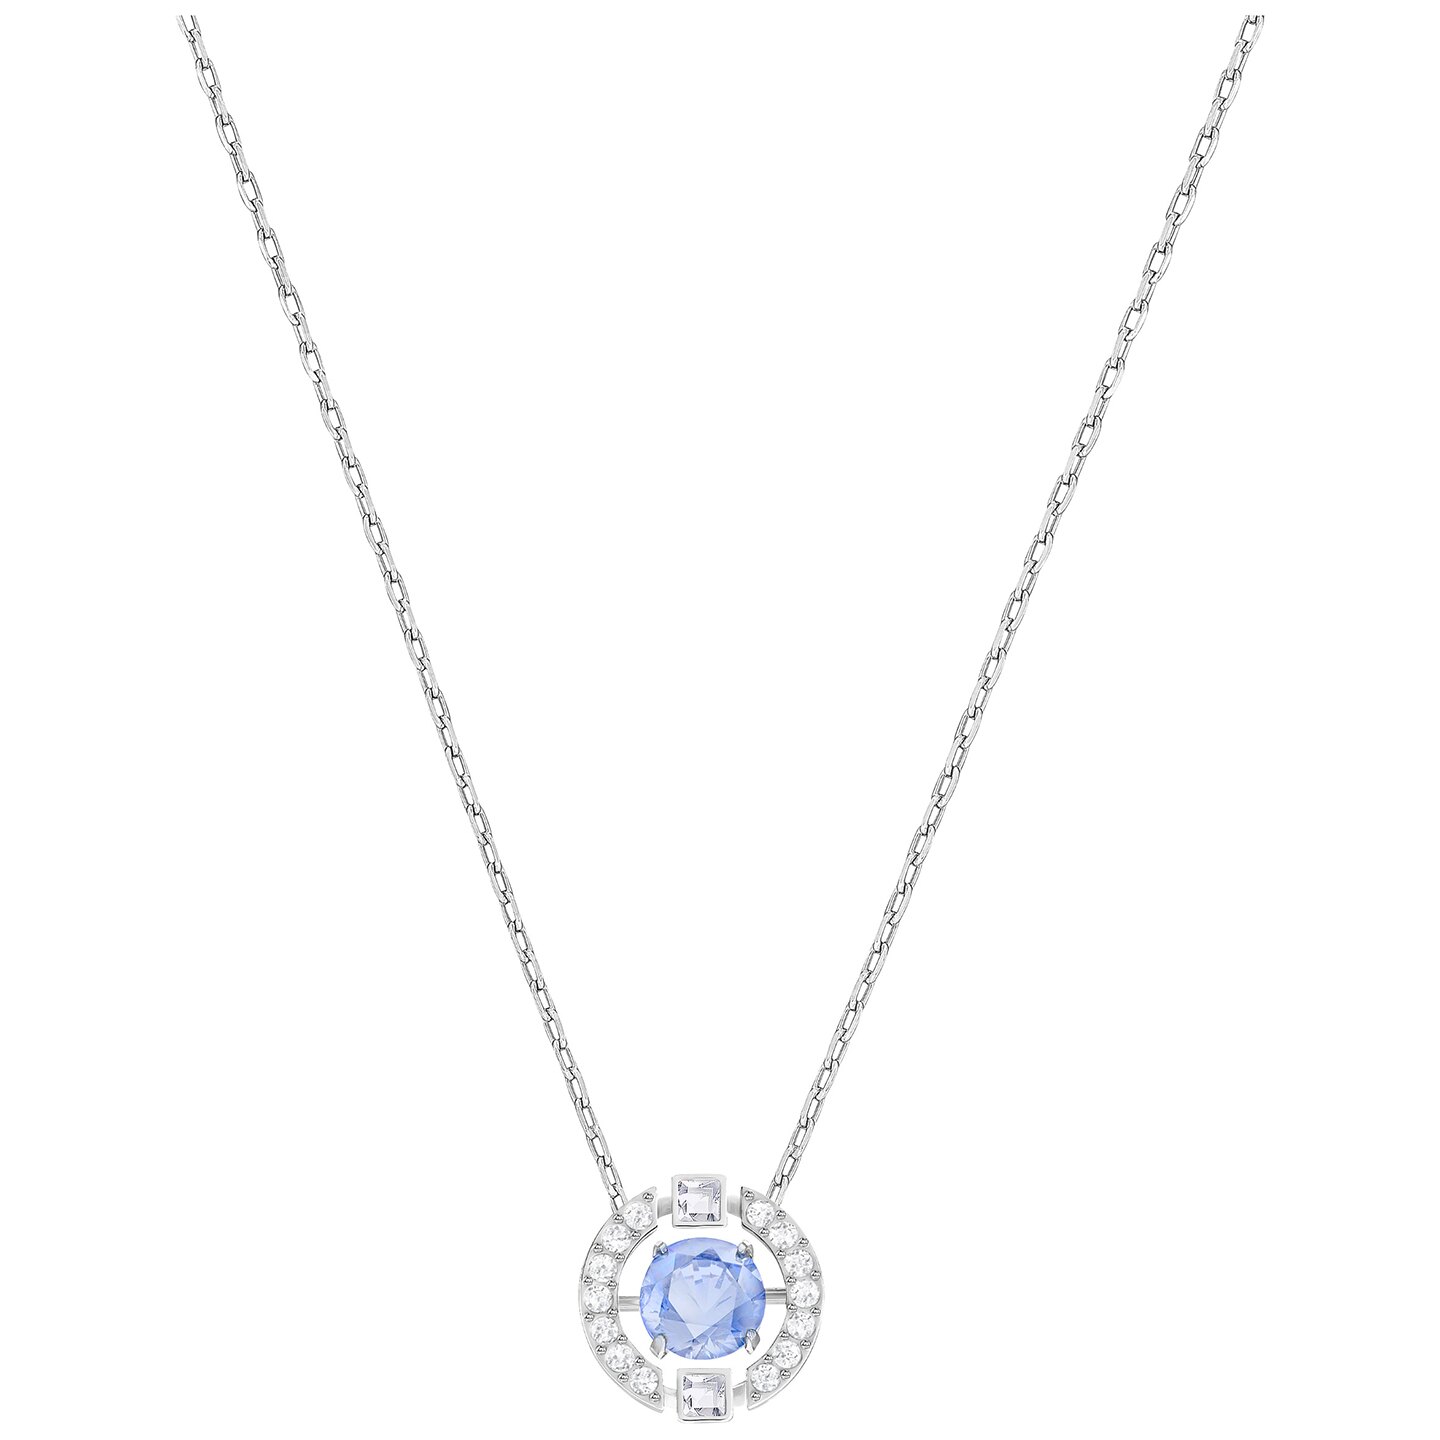 Swarovski Sparkling Dance Round Necklace - Blue - Rhodium Plated - 5279425